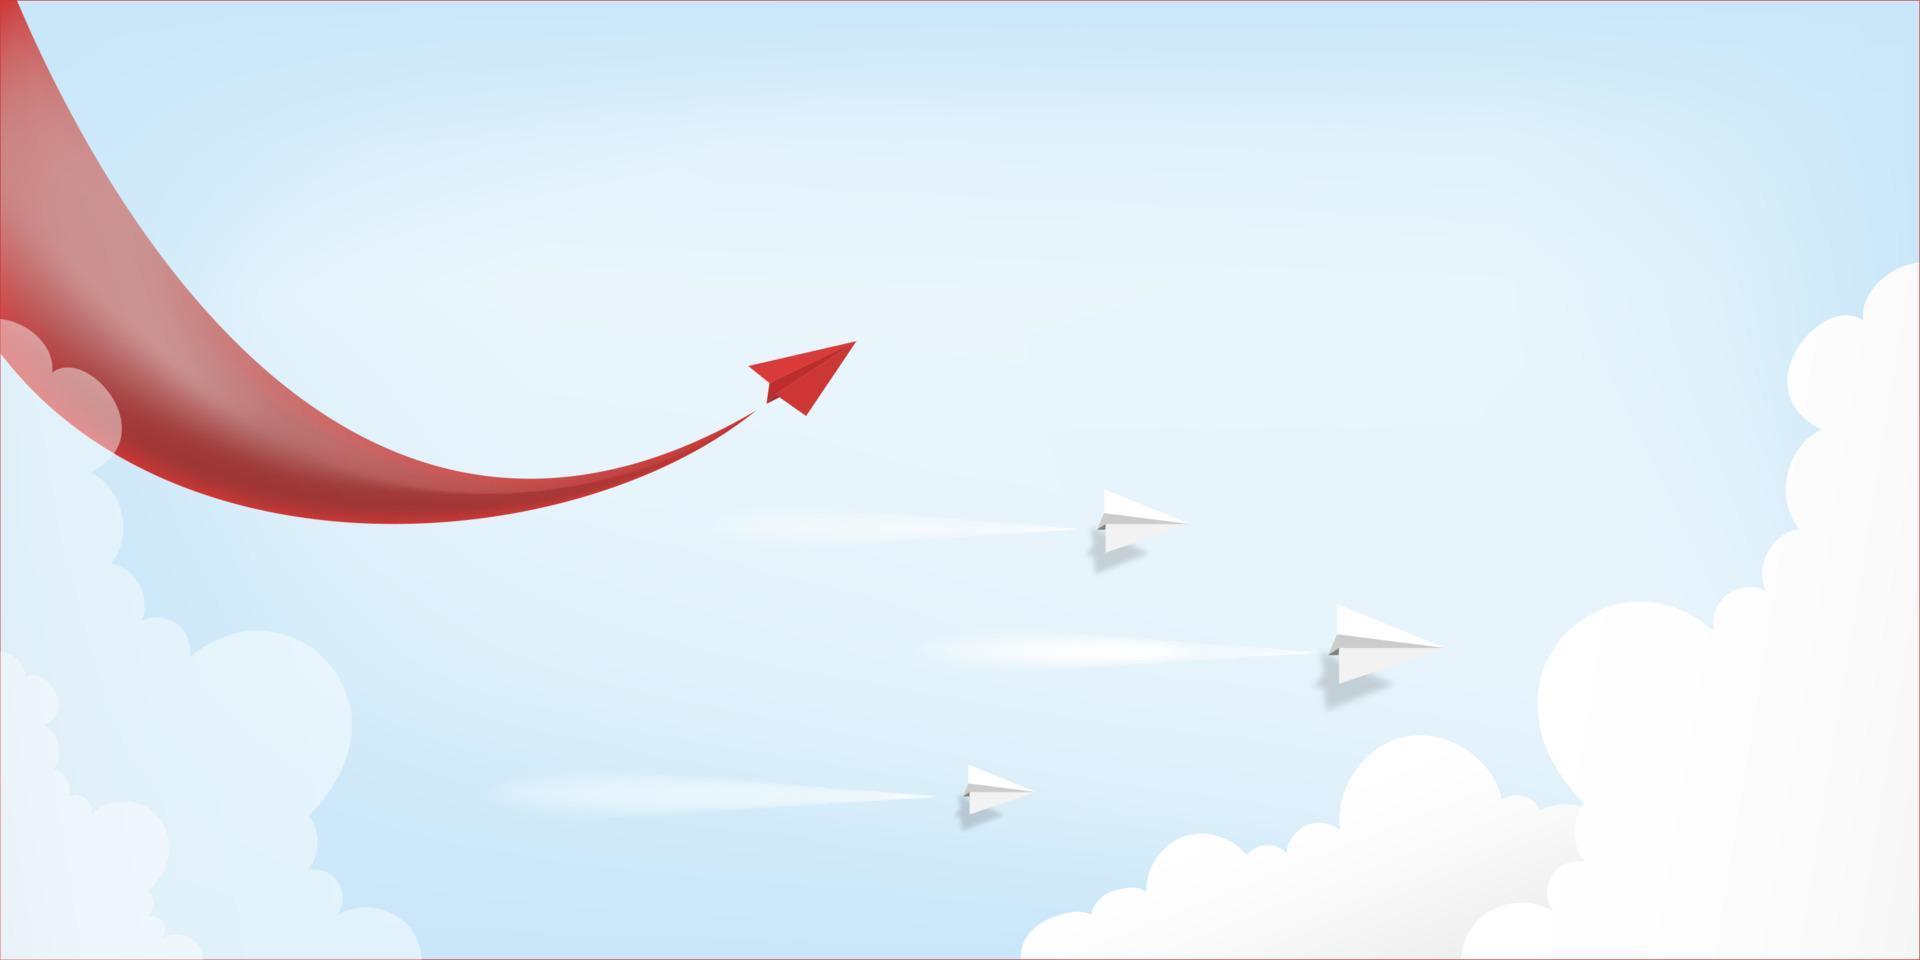 líder de avión de papel rojo volando sobre fondo de cielo azul. concepto creativo idea de éxito empresarial y liderazgo en el diseño de estilo de arte artesanal de papel. ilustración vectorial vector